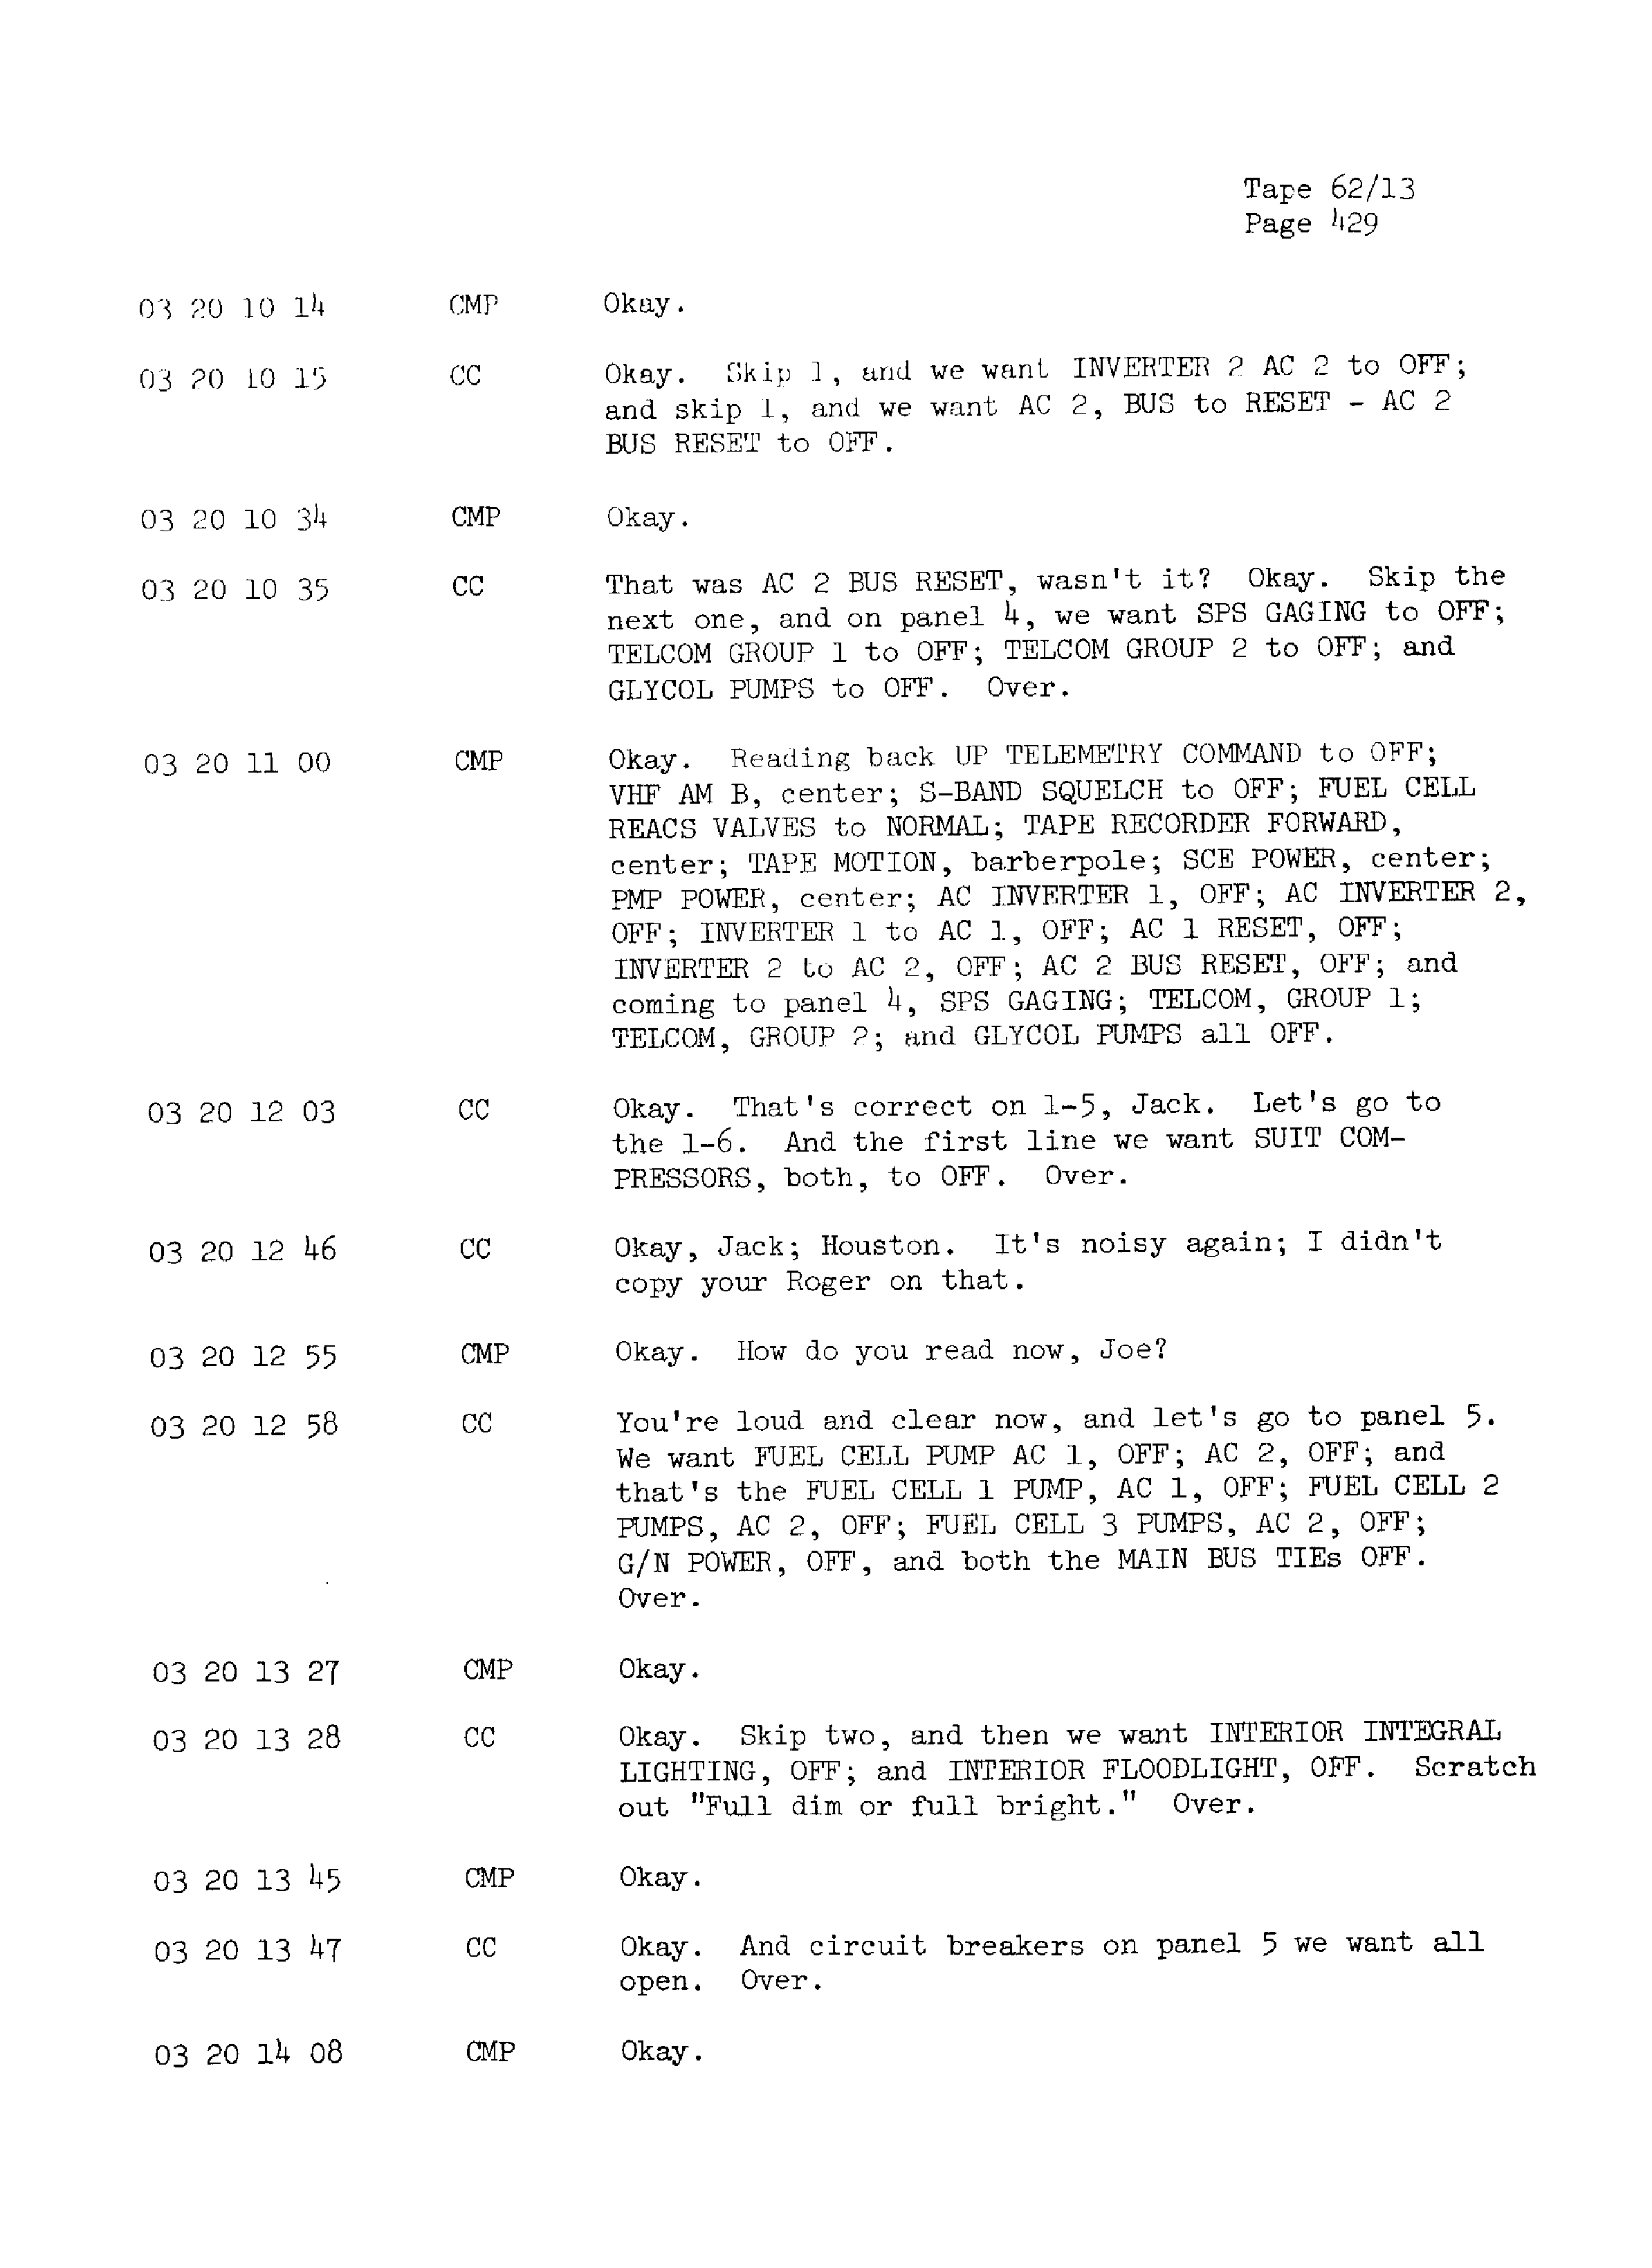 Page 436 of Apollo 13’s original transcript